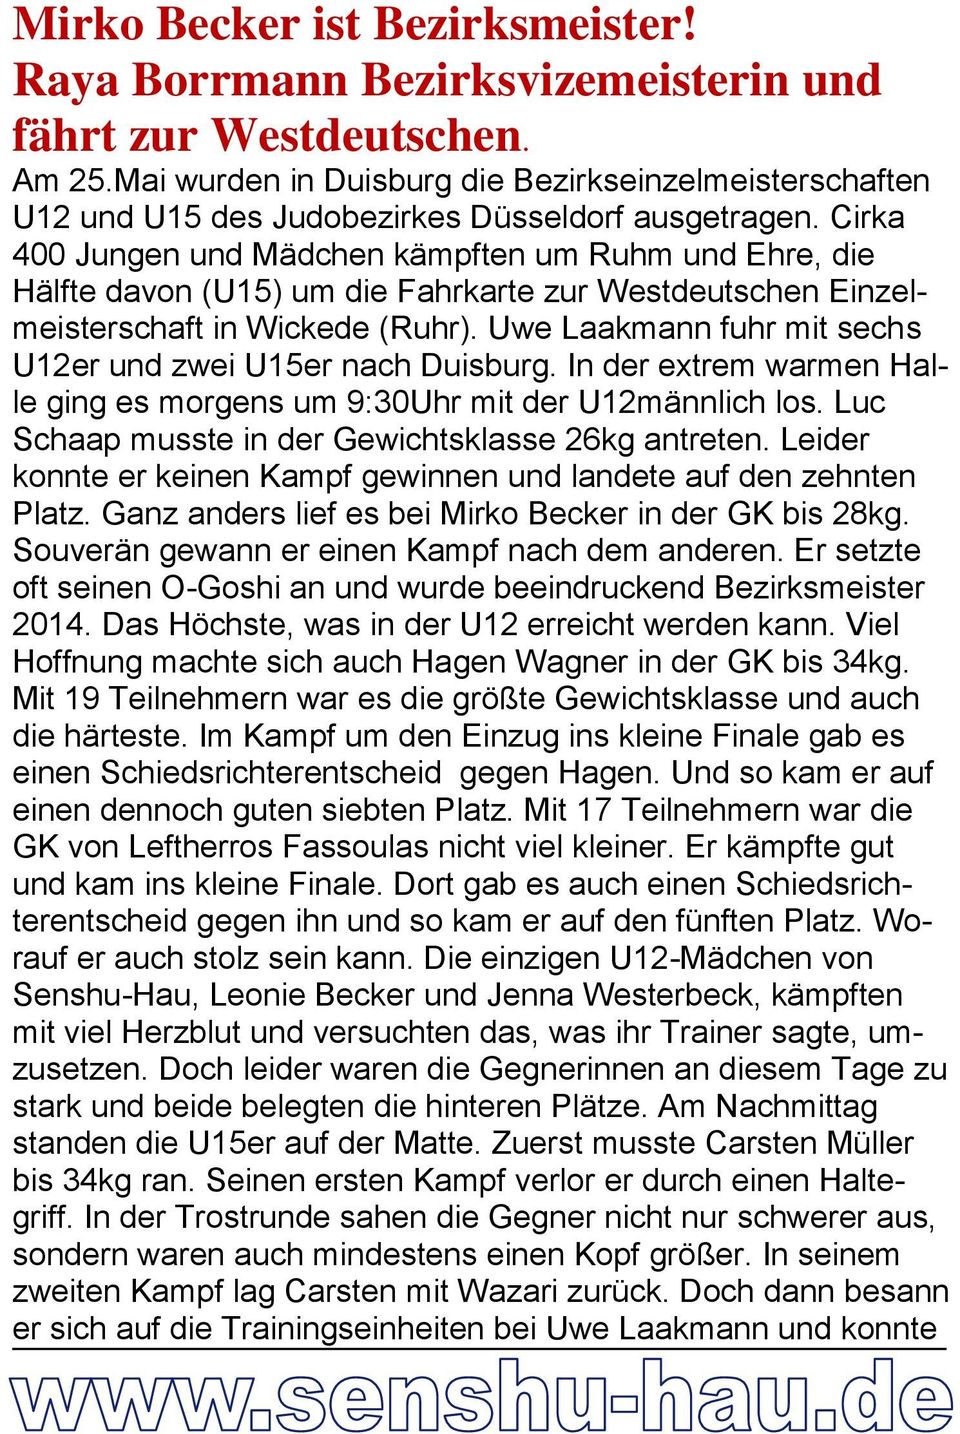 Cirka 400 Jungen und Mädchen kämpften um Ruhm und Ehre, die Hälfte davon (U15) um die Fahrkarte zur Westdeutschen Einzelmeisterschaft in Wickede (Ruhr).